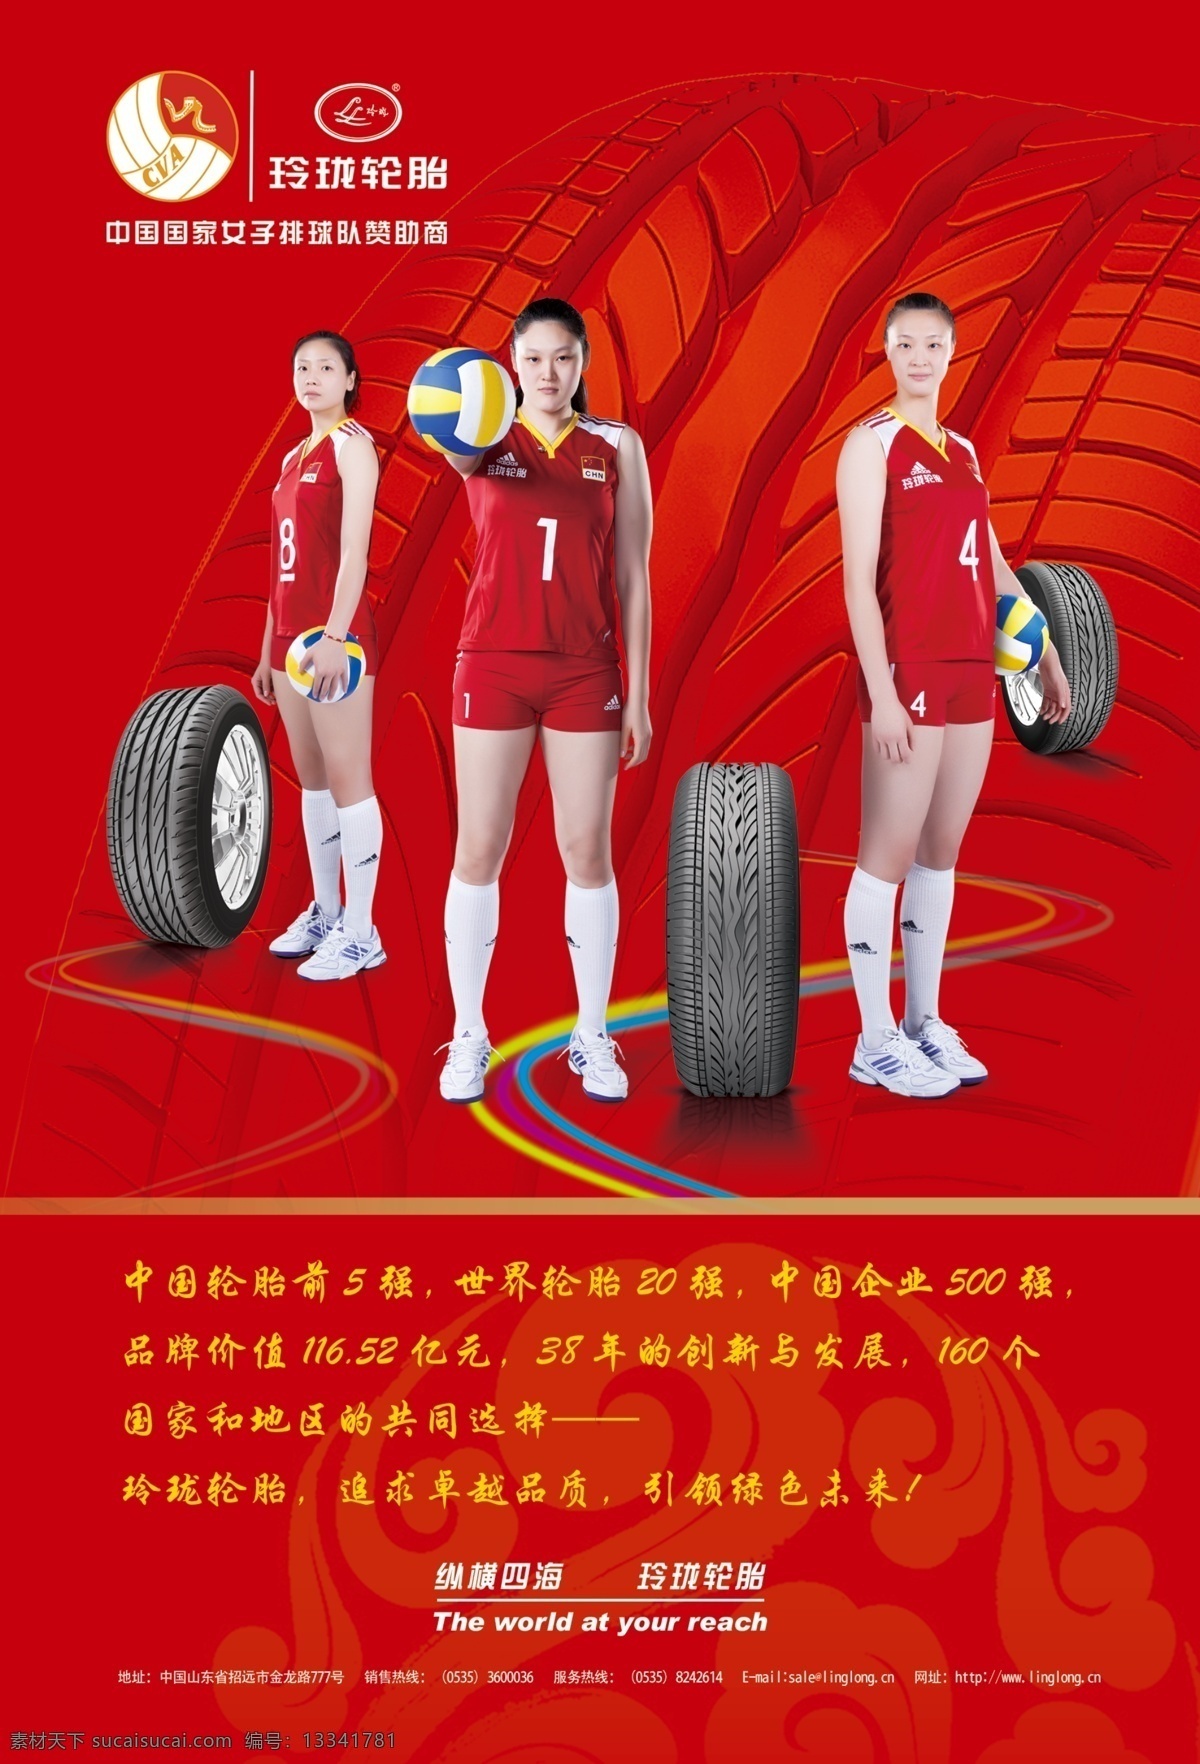 玲珑 轮胎 女排 形象 广告 排球 玲珑轮胎 中国女排 原创设计 其他原创设计